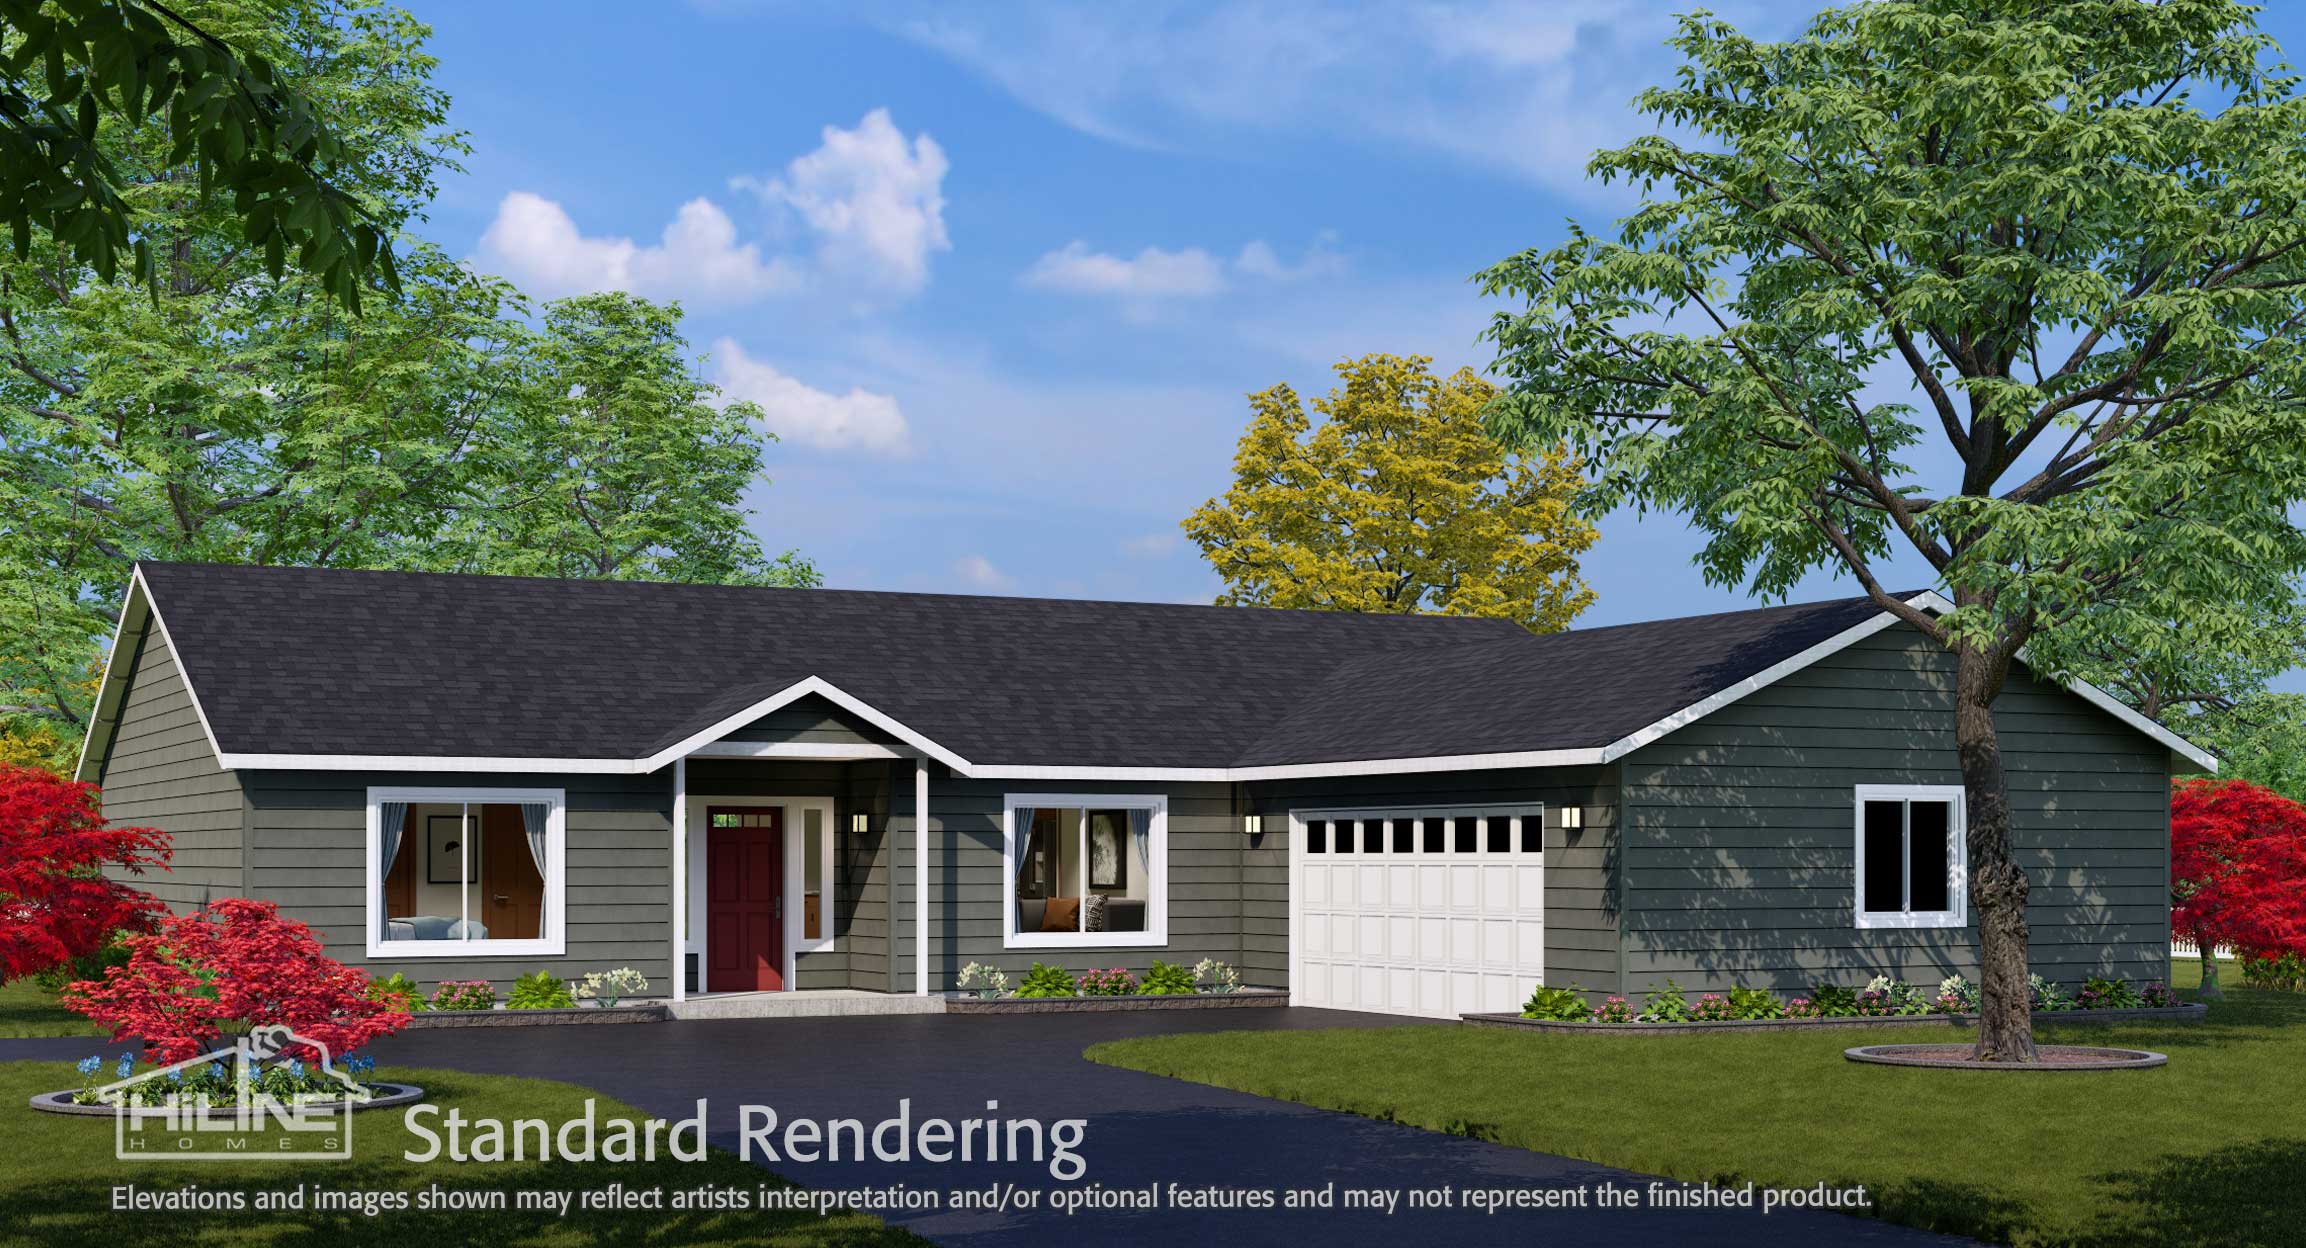 Image of Home Plan 1940B Standard Rendering.